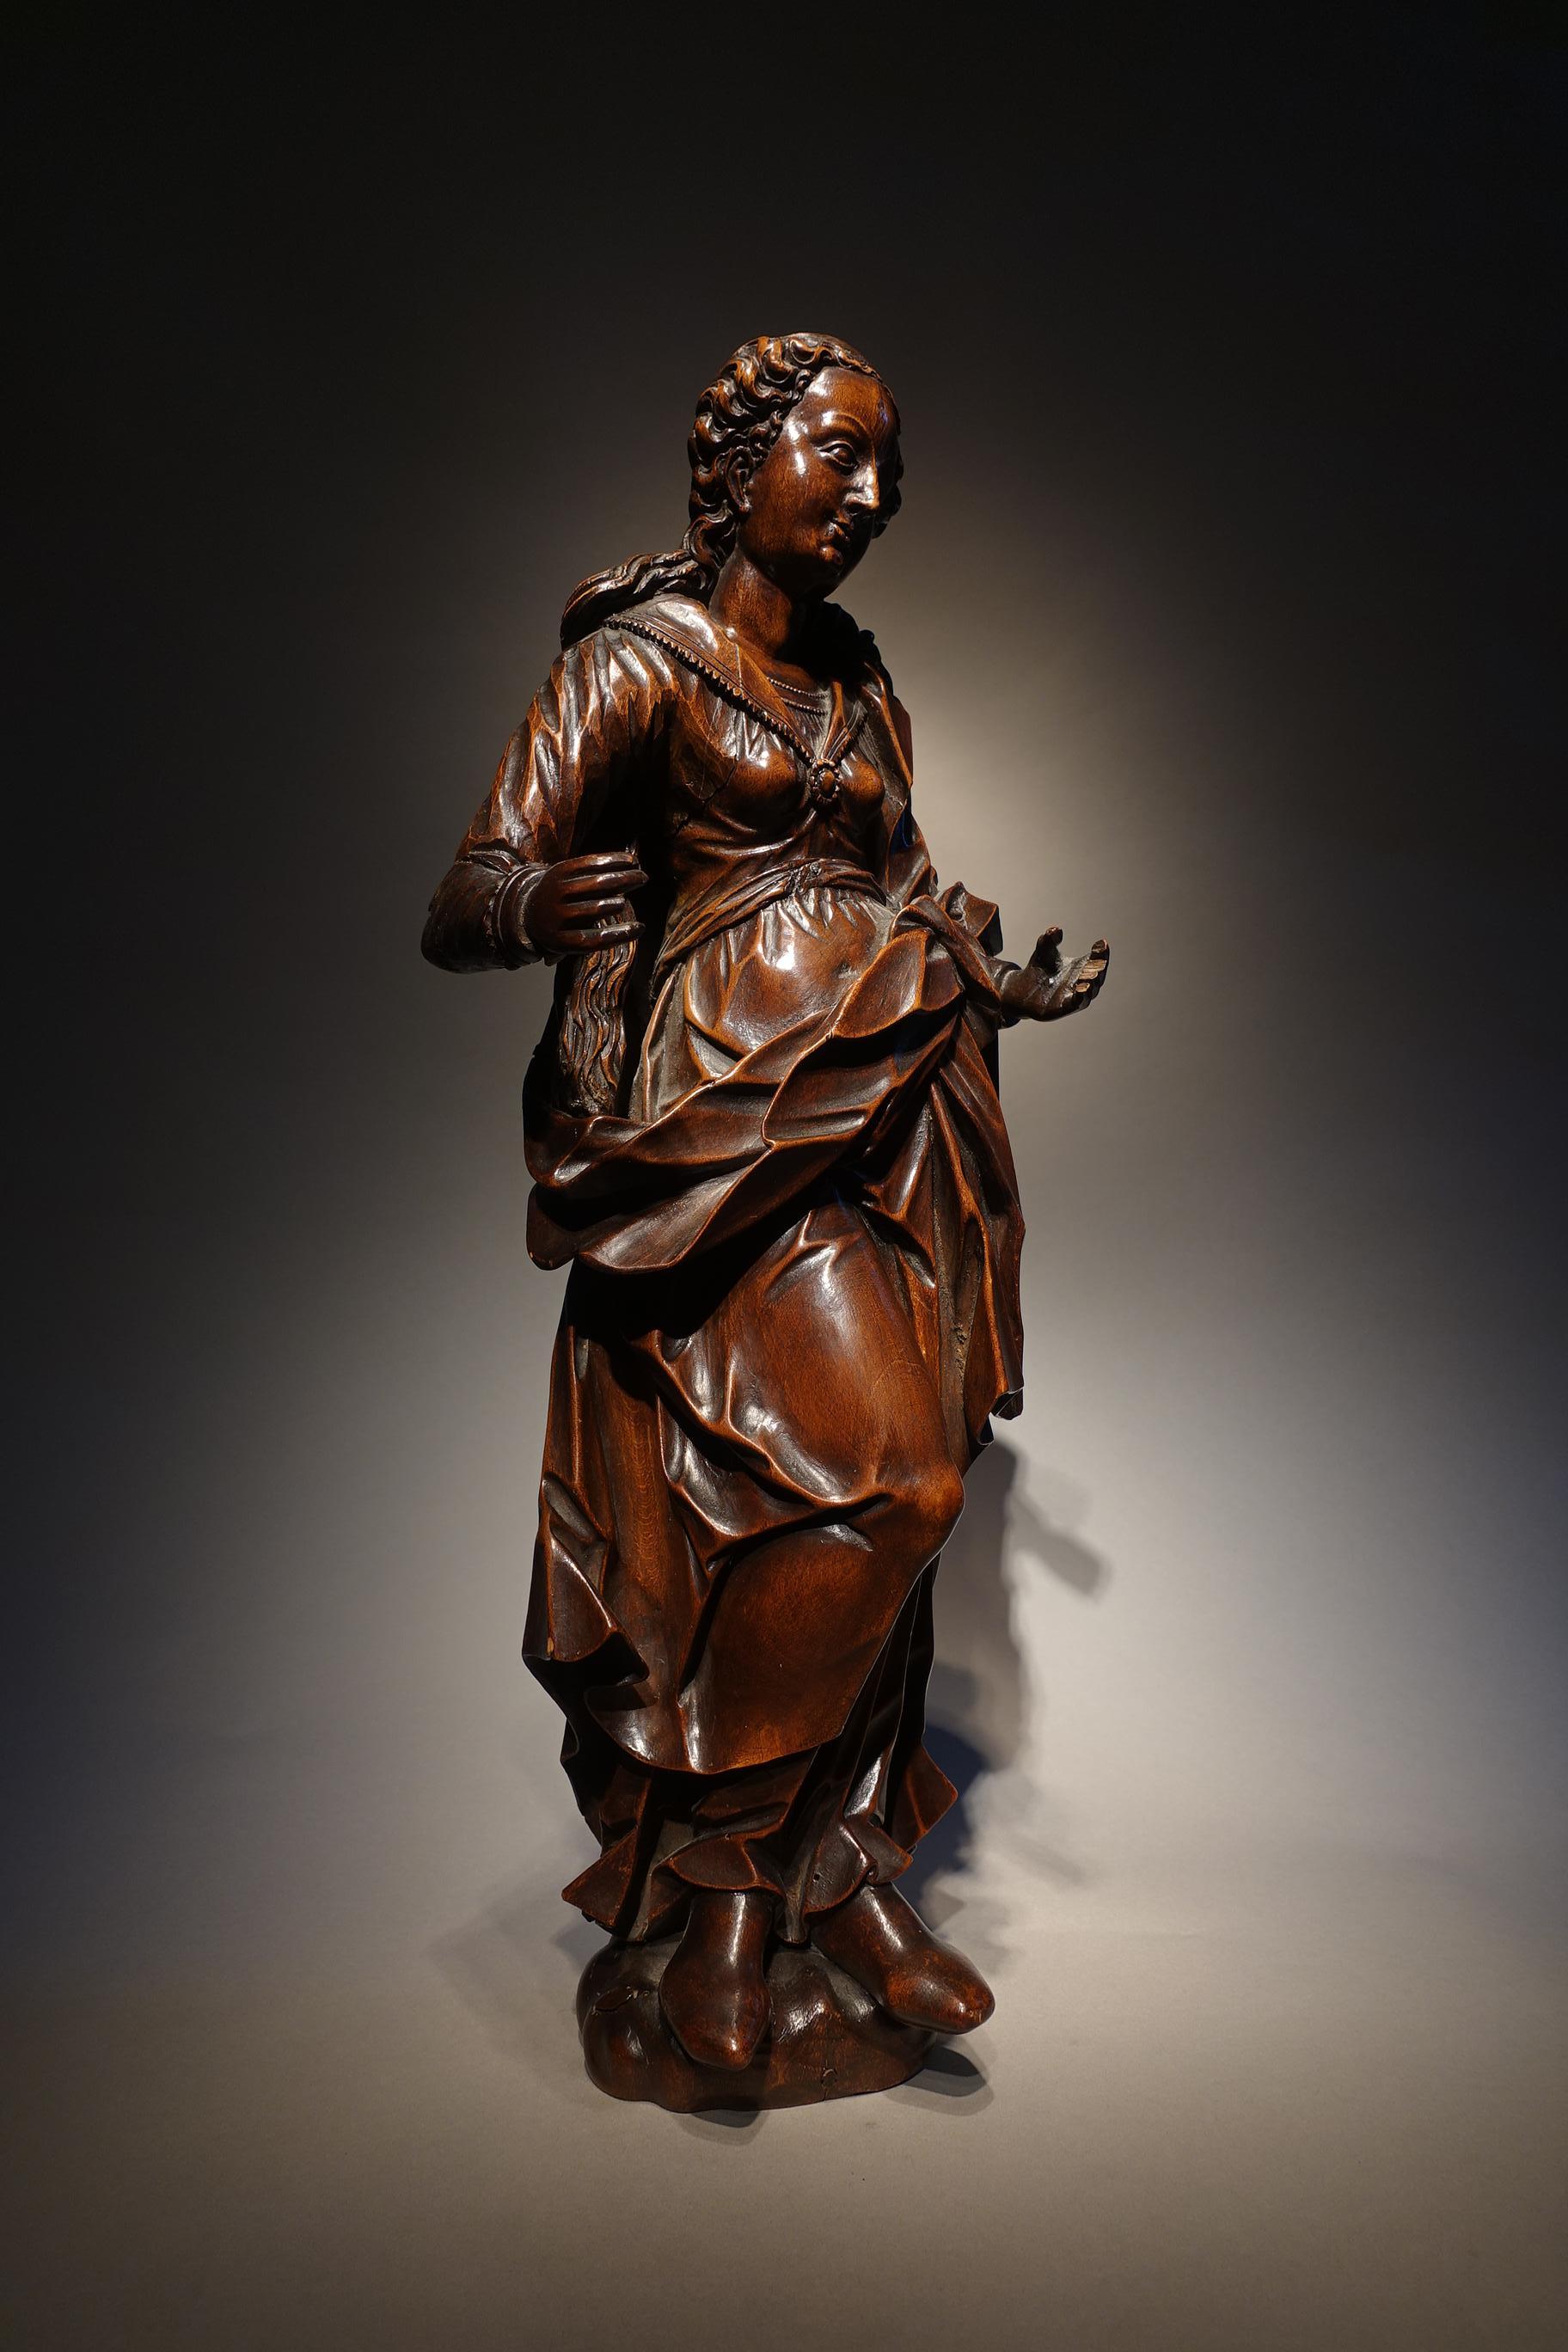 Statuette de la Vierge
Allemand du Sud, vers 1600
bois sculpté
vers 1600
(bras droit restauré)
52 cm